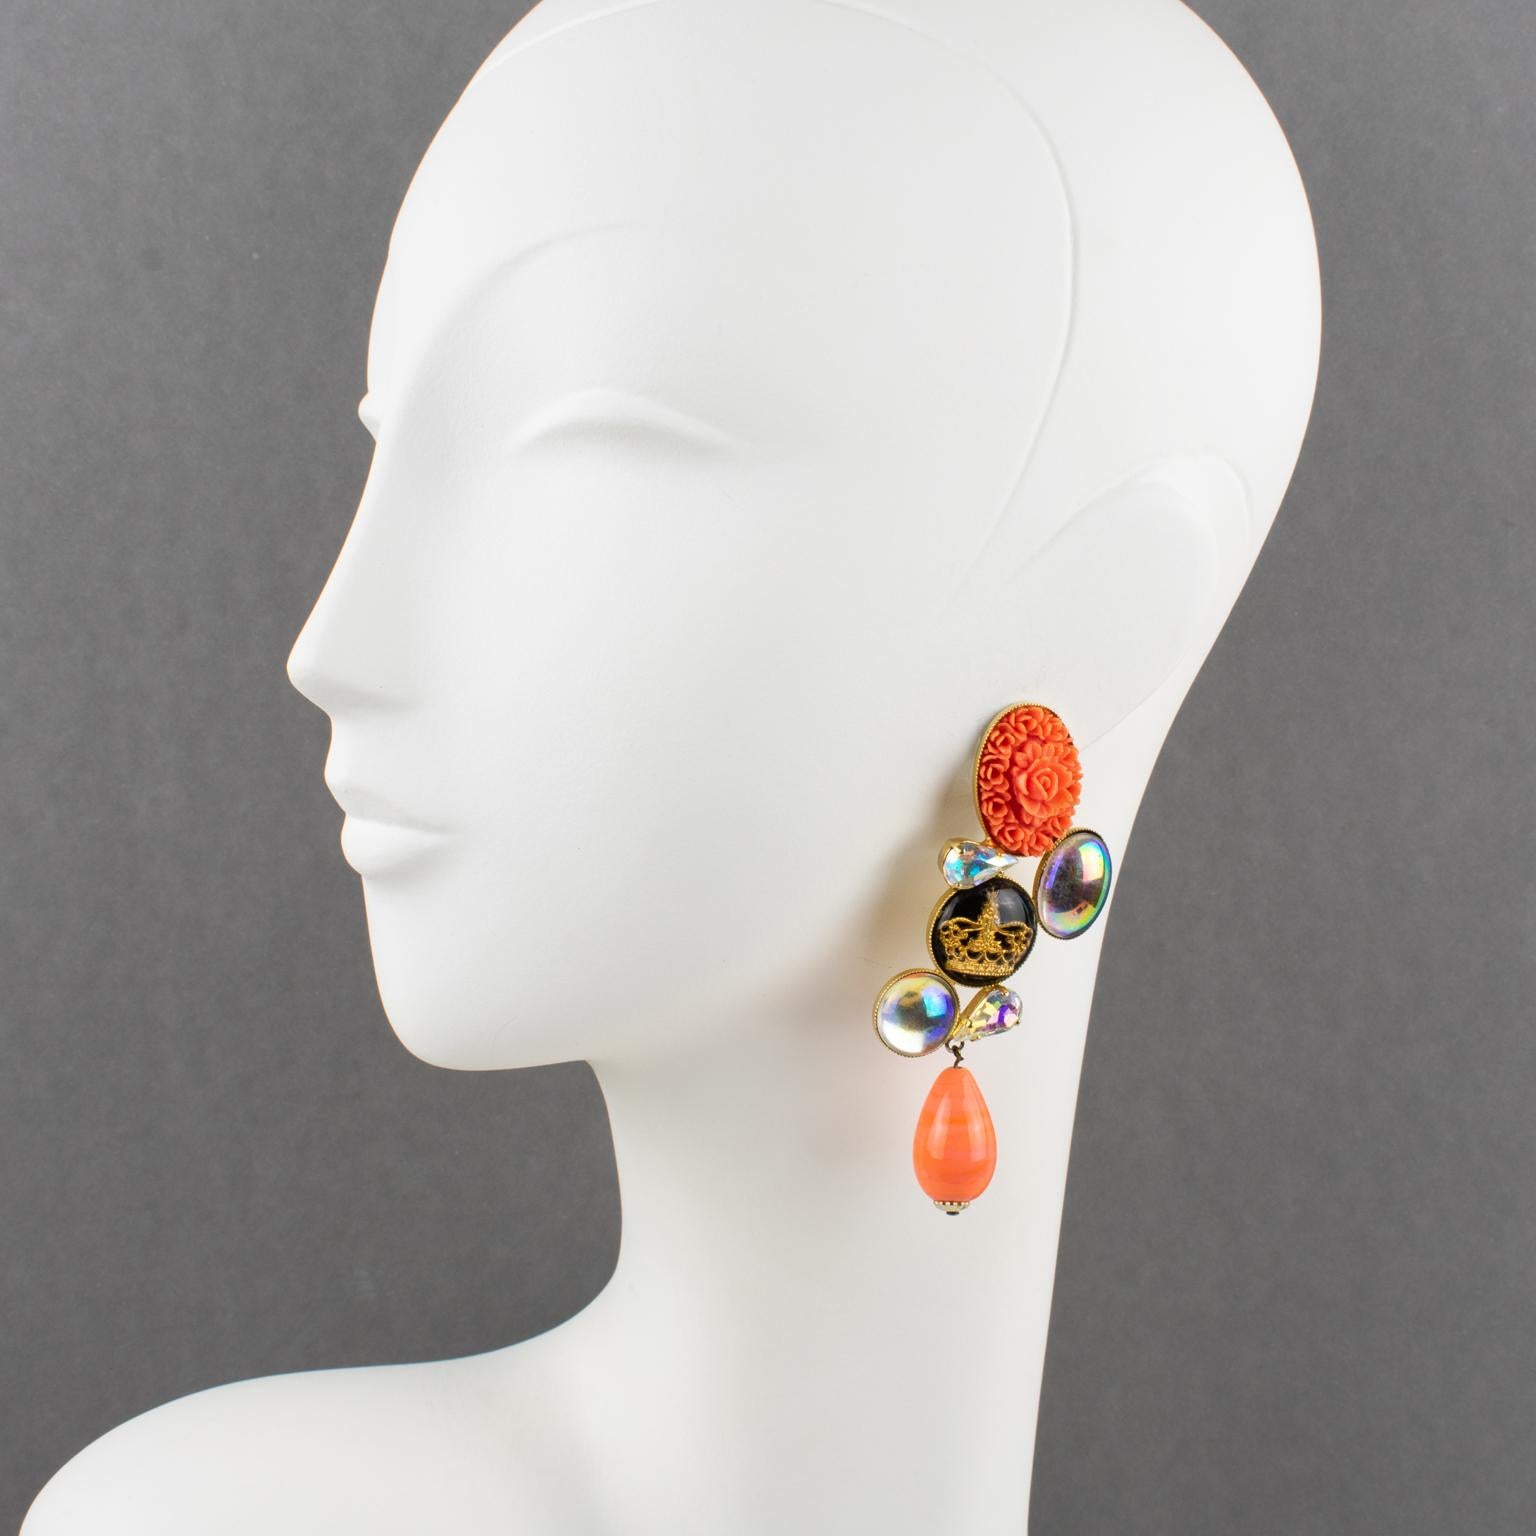 Diese romantischen Ohrringe der französischen Designerin Zoe Coste haben eine baumelnde Form im Barockstil mit einer vergoldeten Metallfassung, die mit Aurora Borealis-Glas-Cabochons, birnenförmigen Strasssteinen in facettiertem Kristall und einer